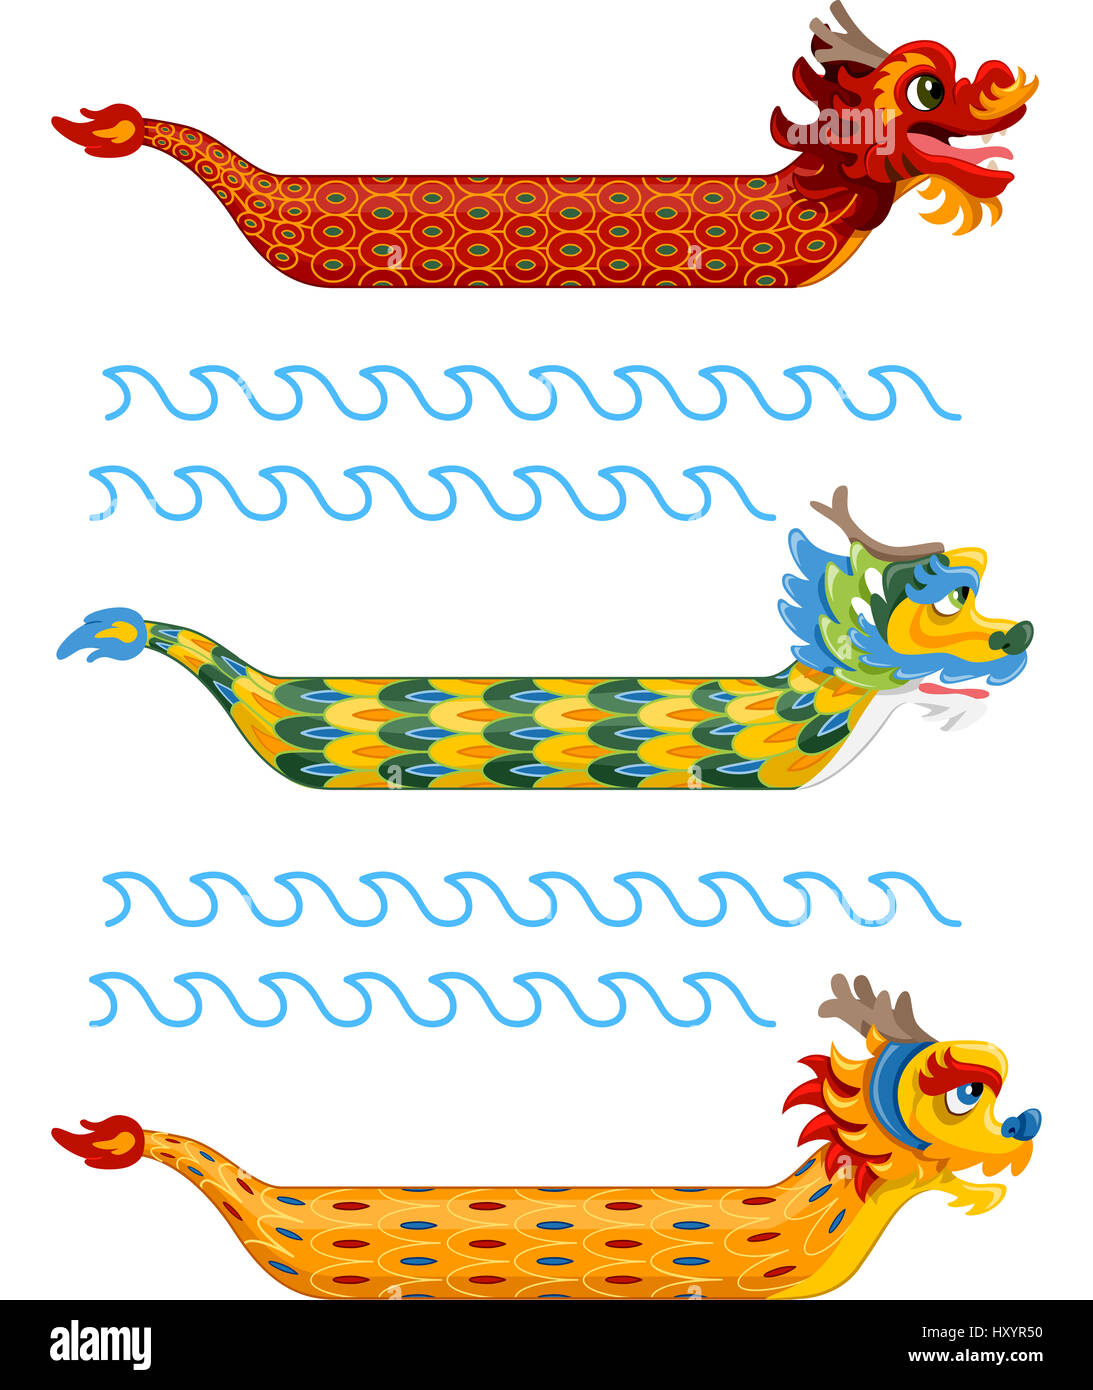 Illustration de bateaux dragons avec motifs variés et colorés Banque D'Images